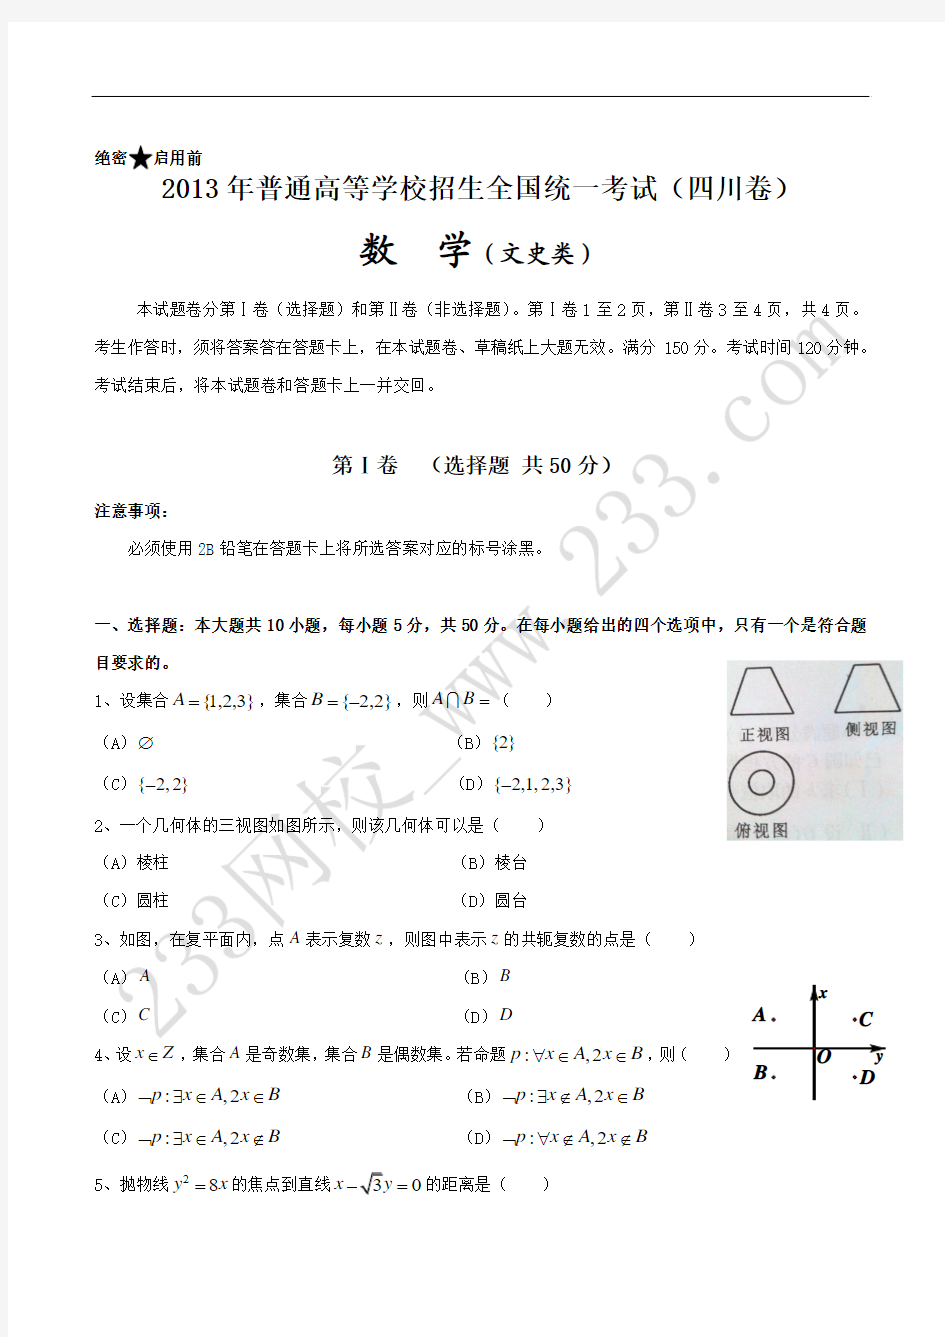 2013年高考数学(四川文)含详细解答